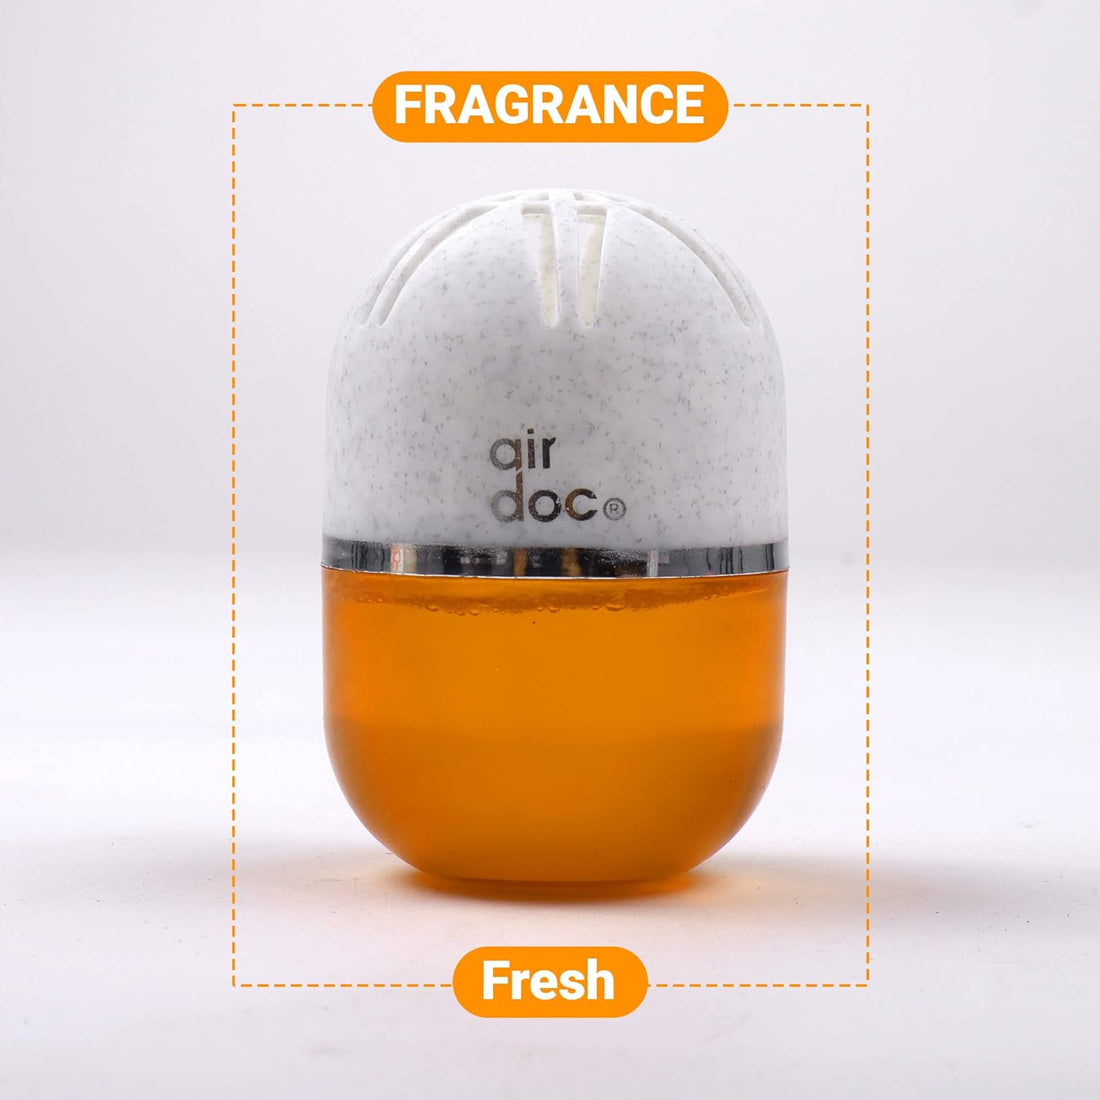 Air Doc Dream Car Perfume